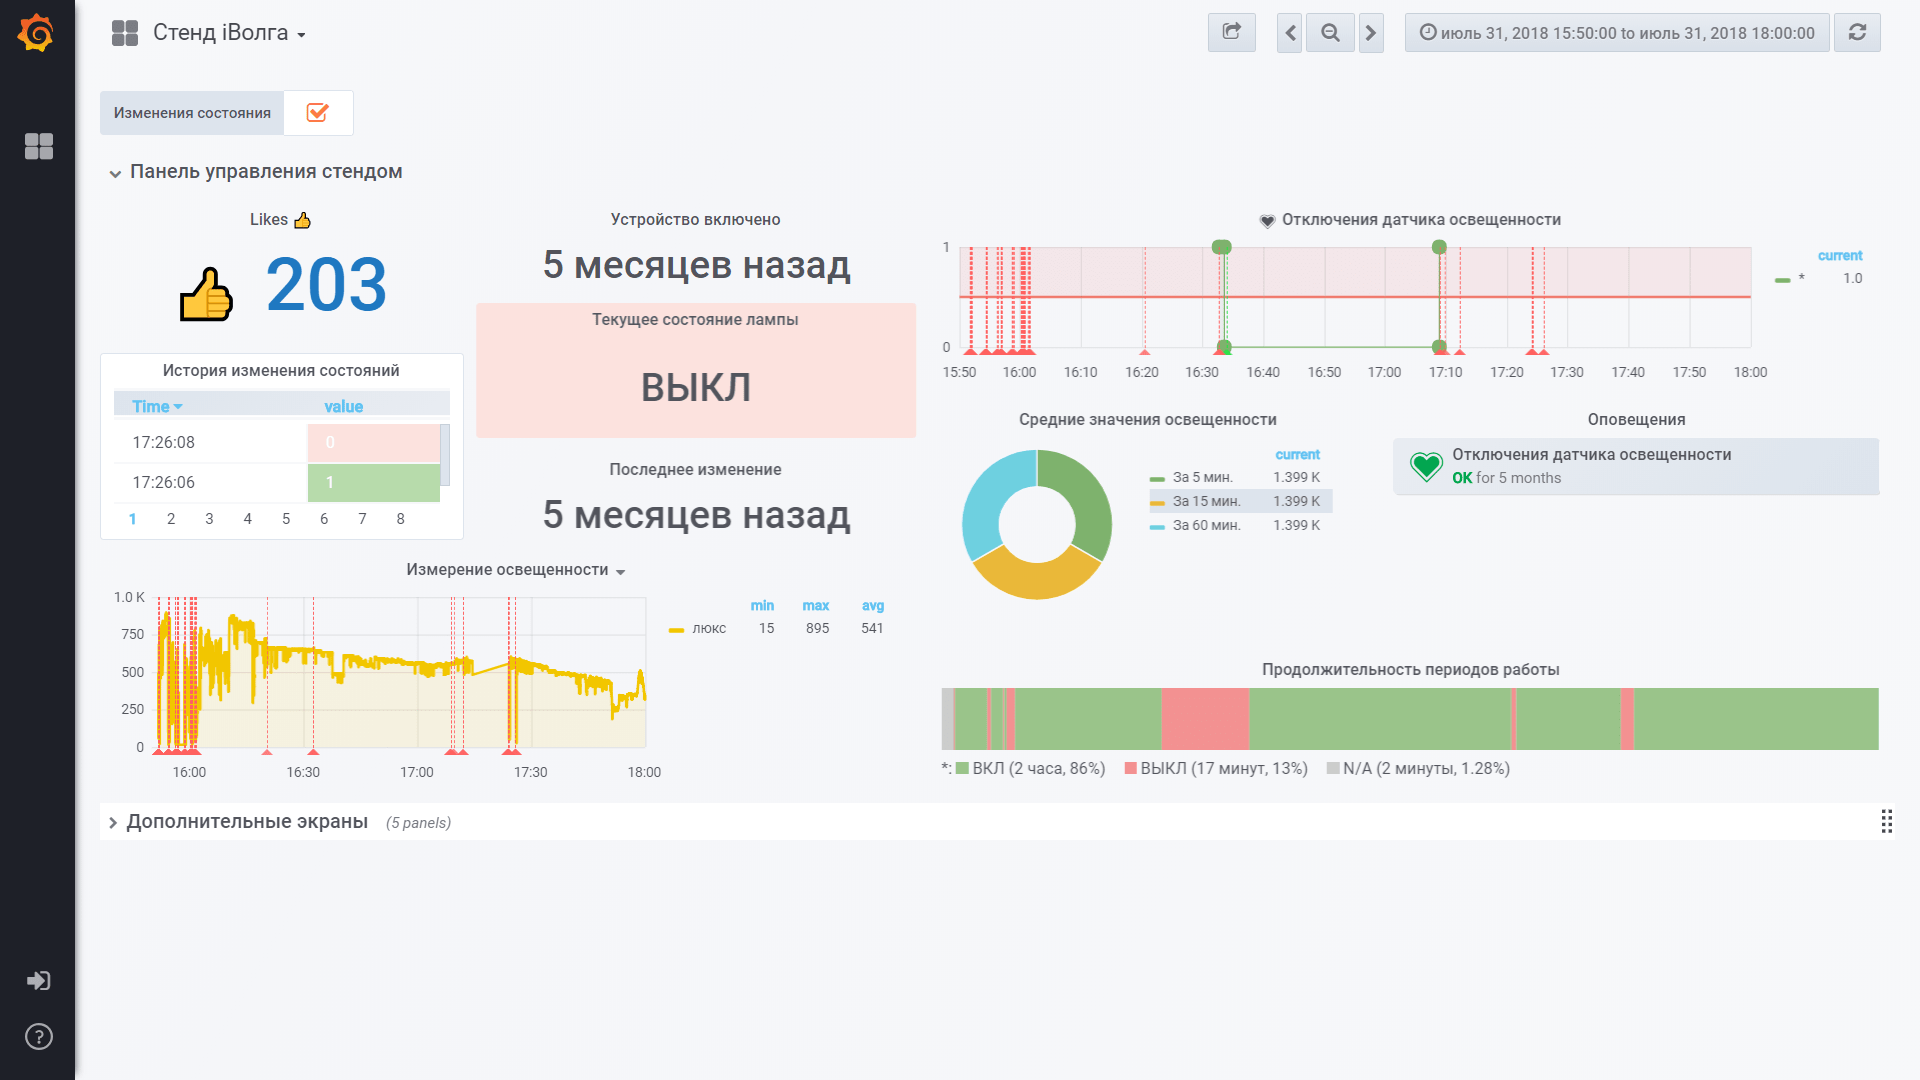 Прототип системы мониторинга и управления из браузера